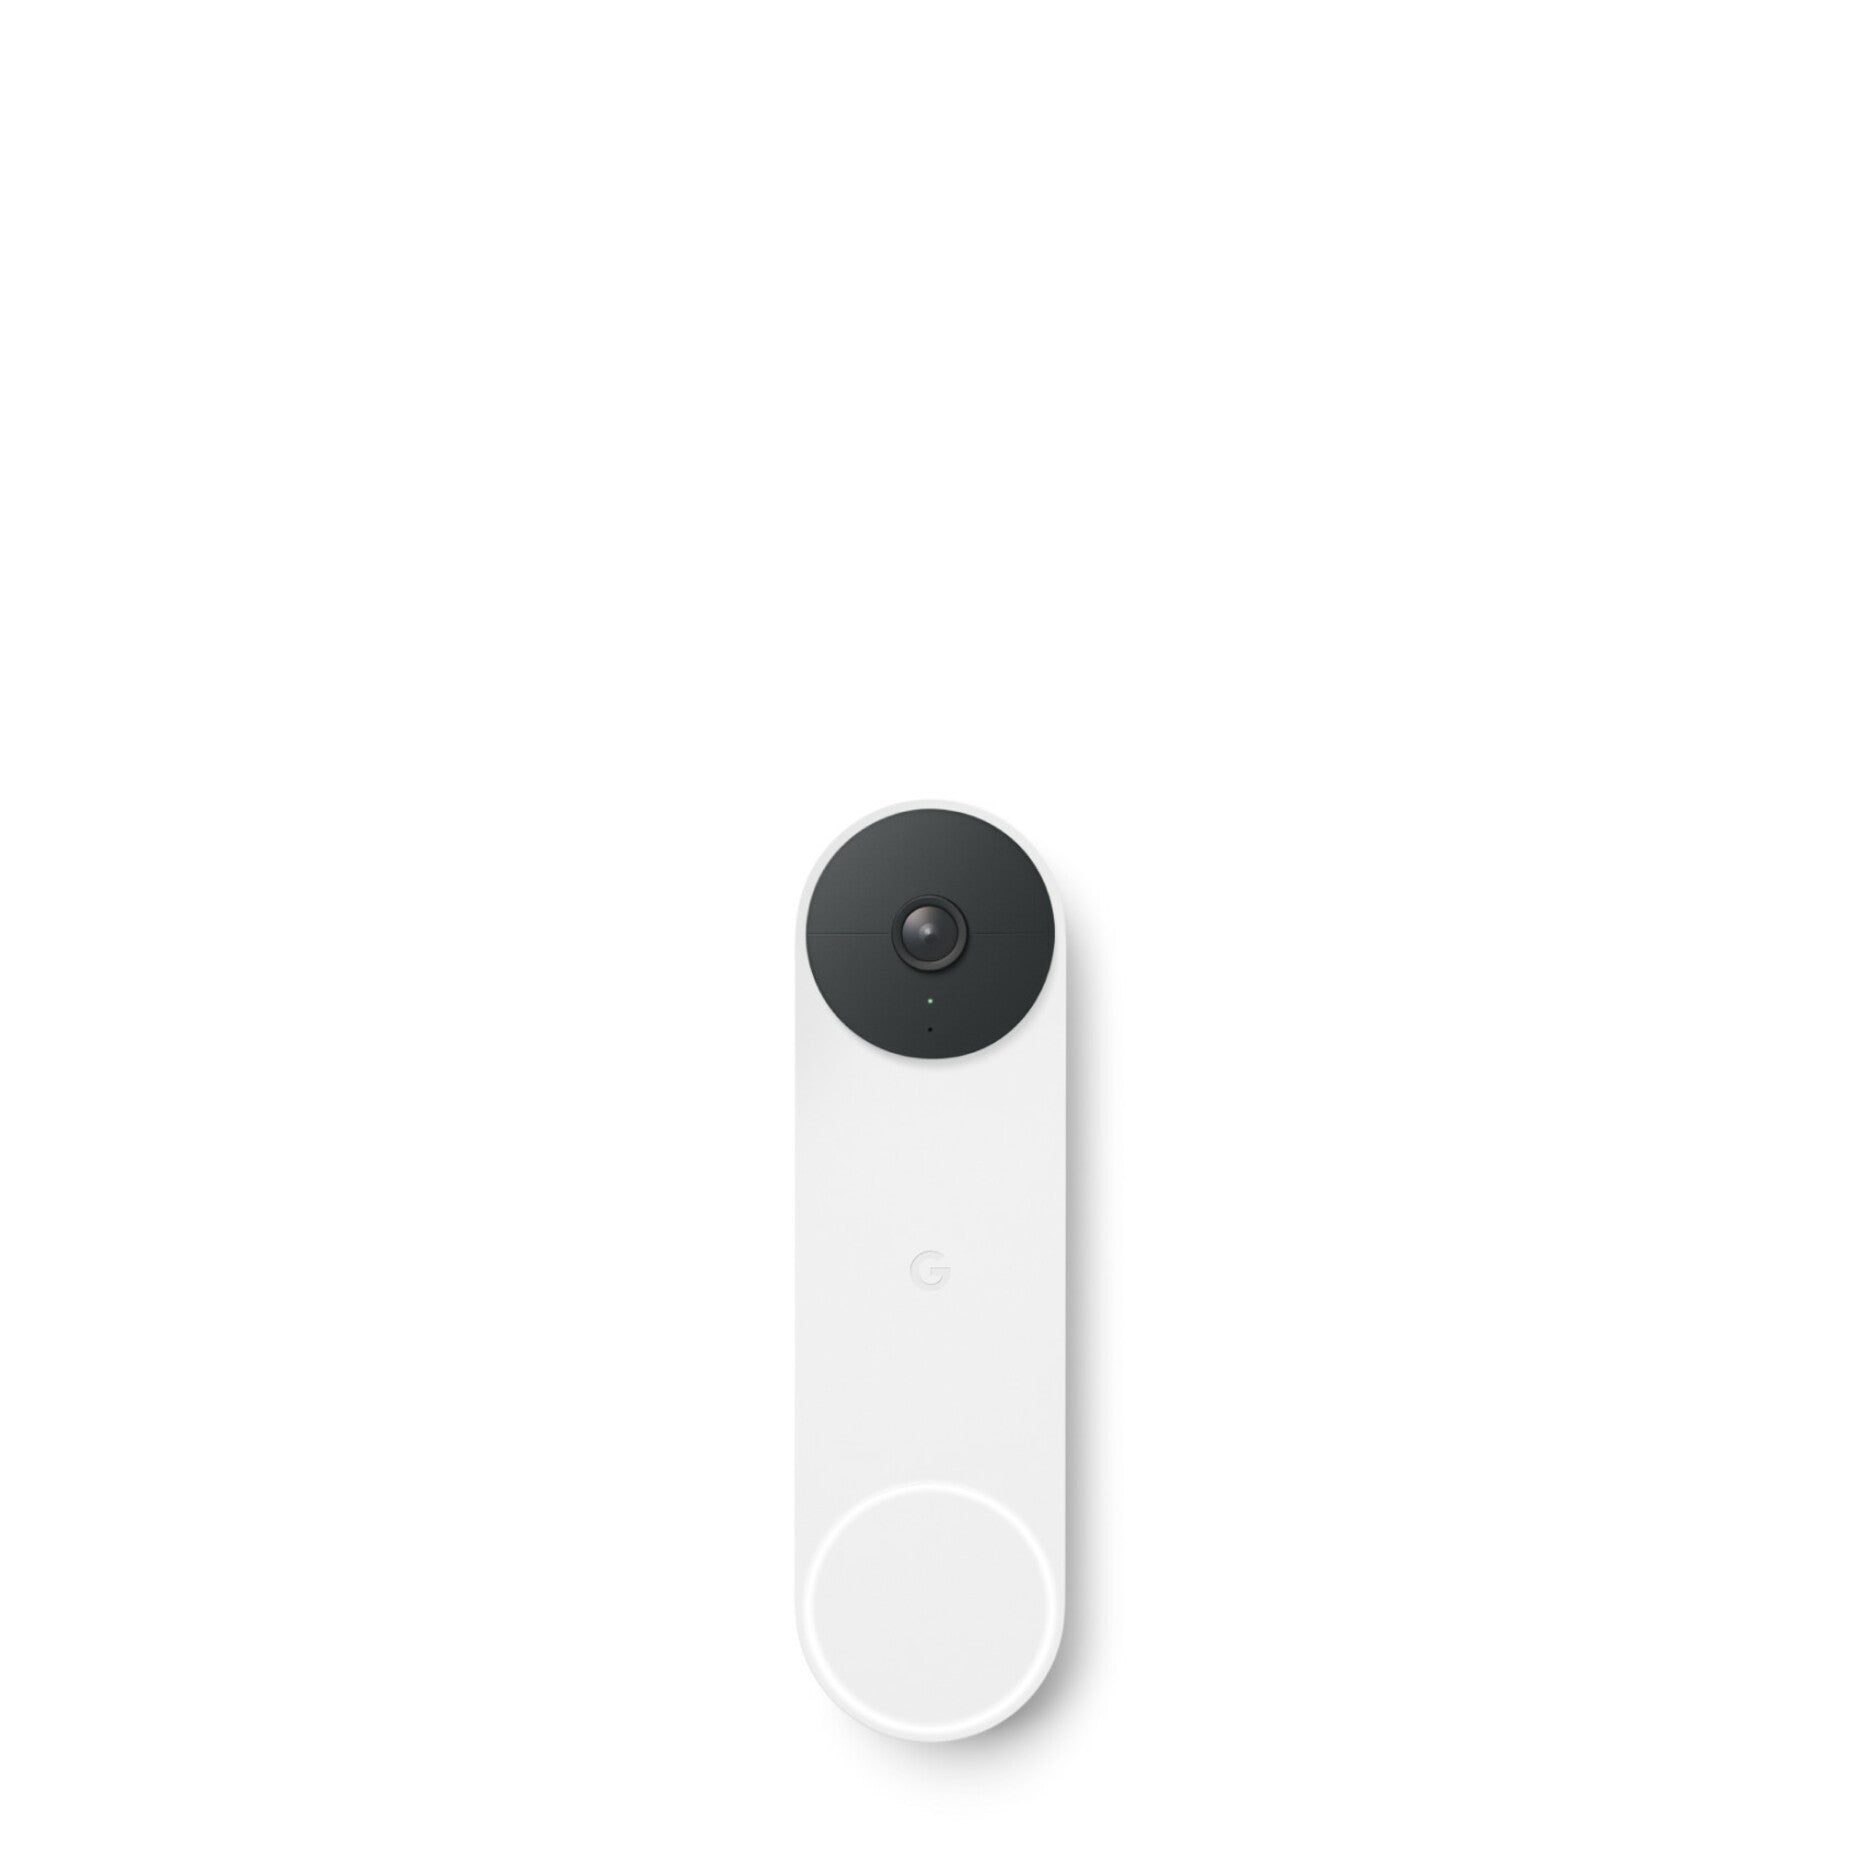 Google GA02075-US Nest Doorbell (Battery), Wireless Video Doorbell with Battery Power Source